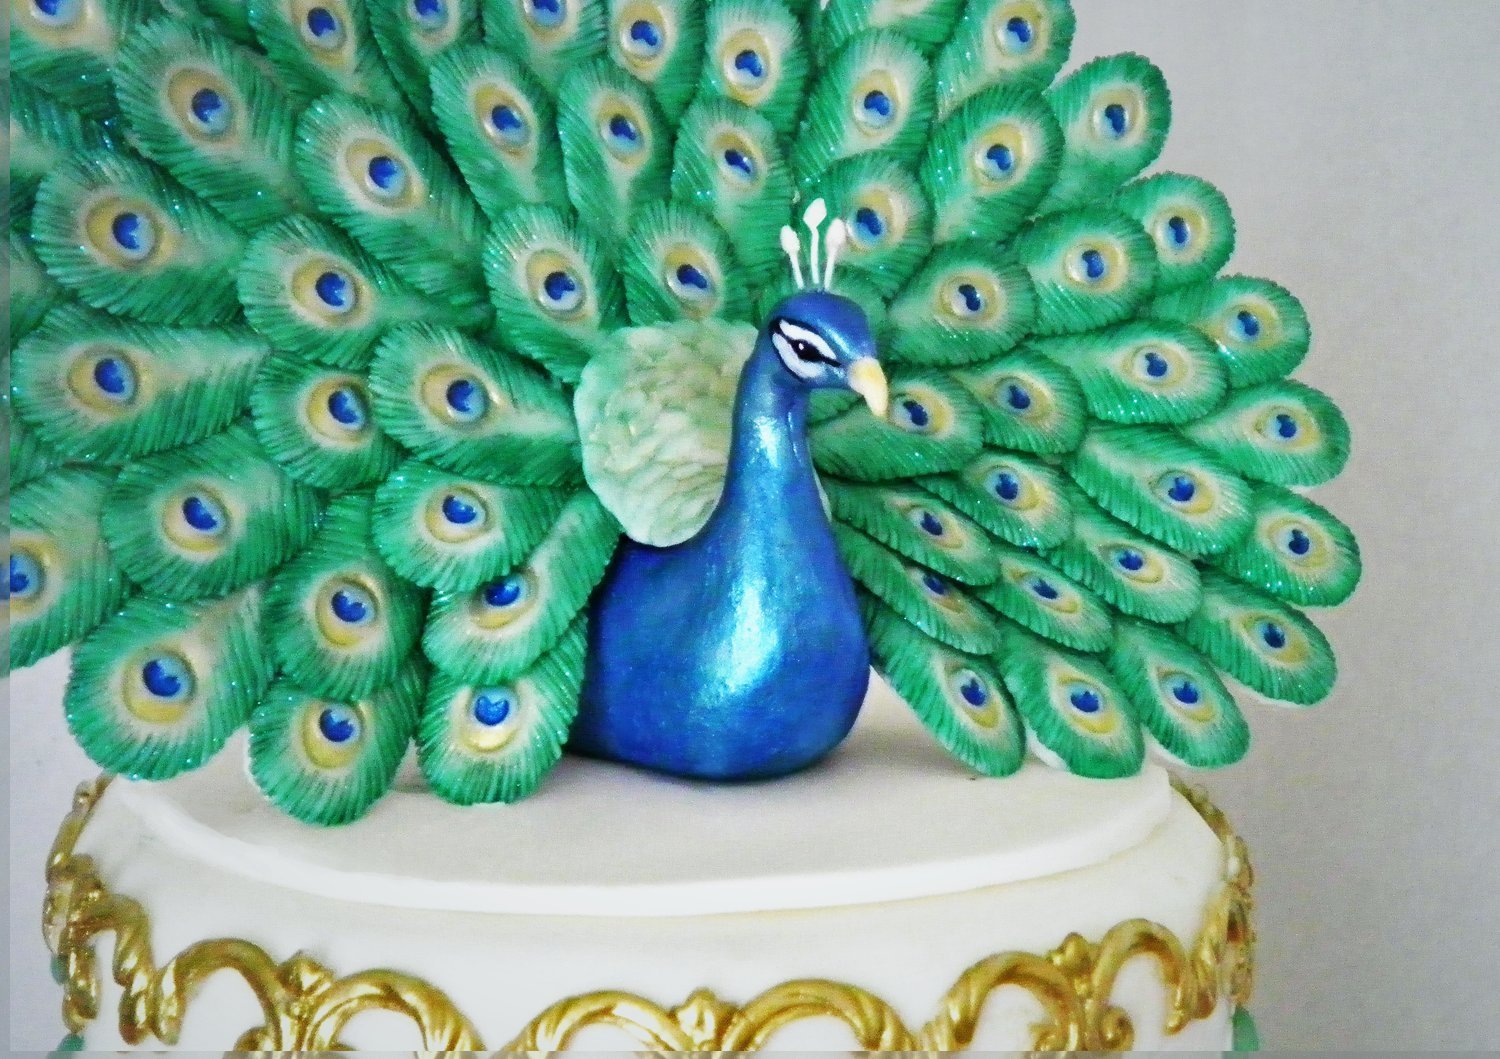 Black Peacock - CakeCentral.com